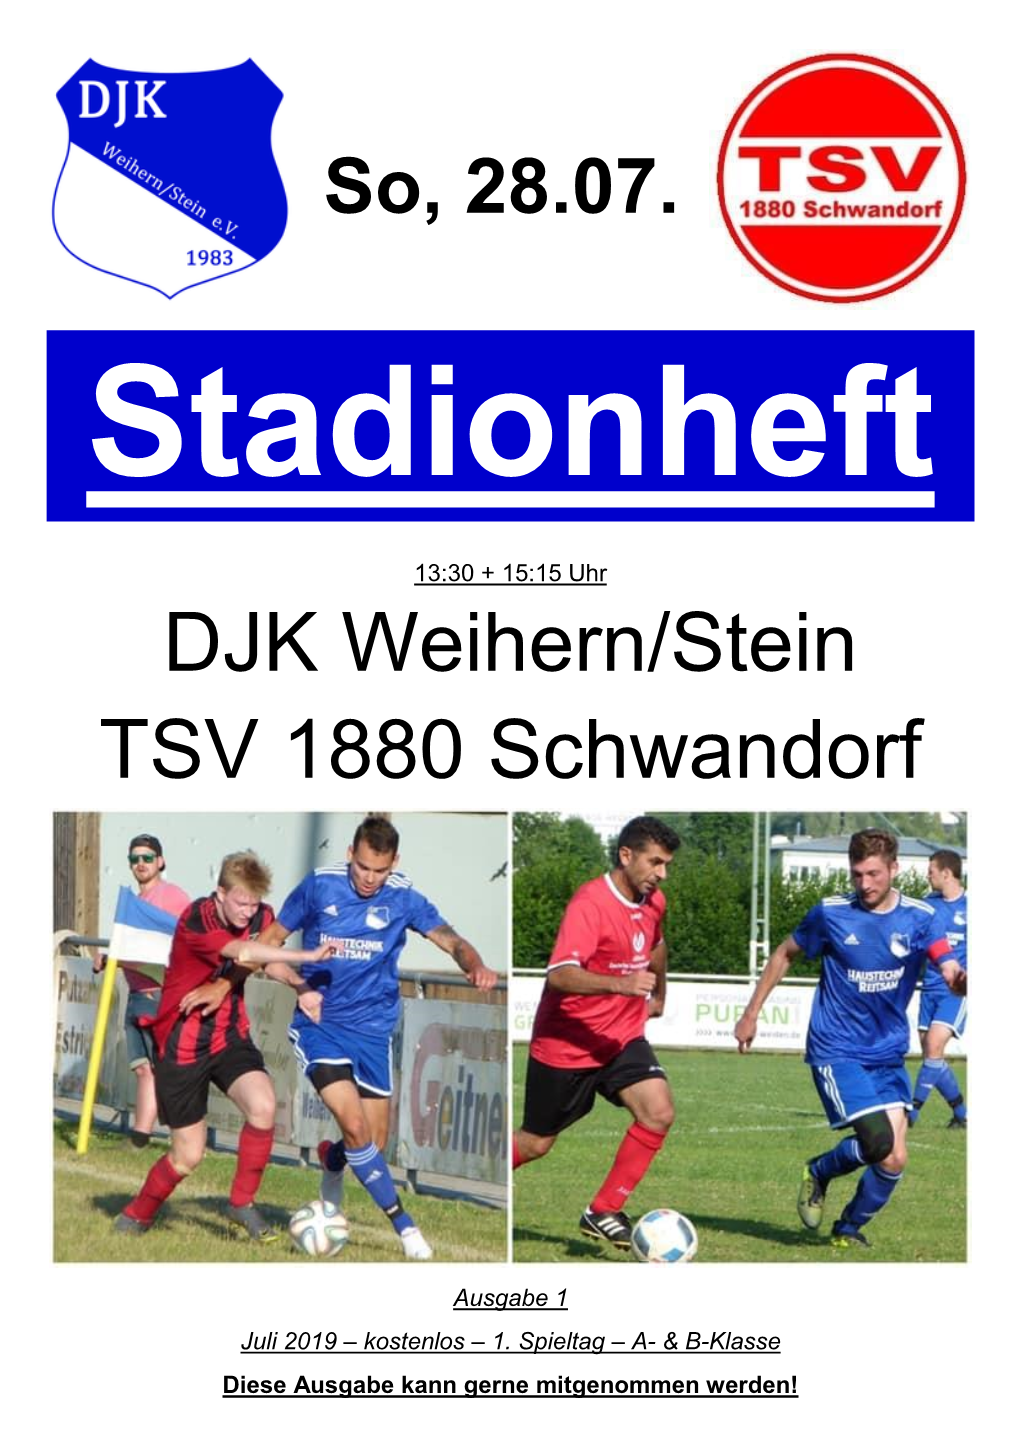 DJK Weihern/Stein TSV 1880 Schwandorf